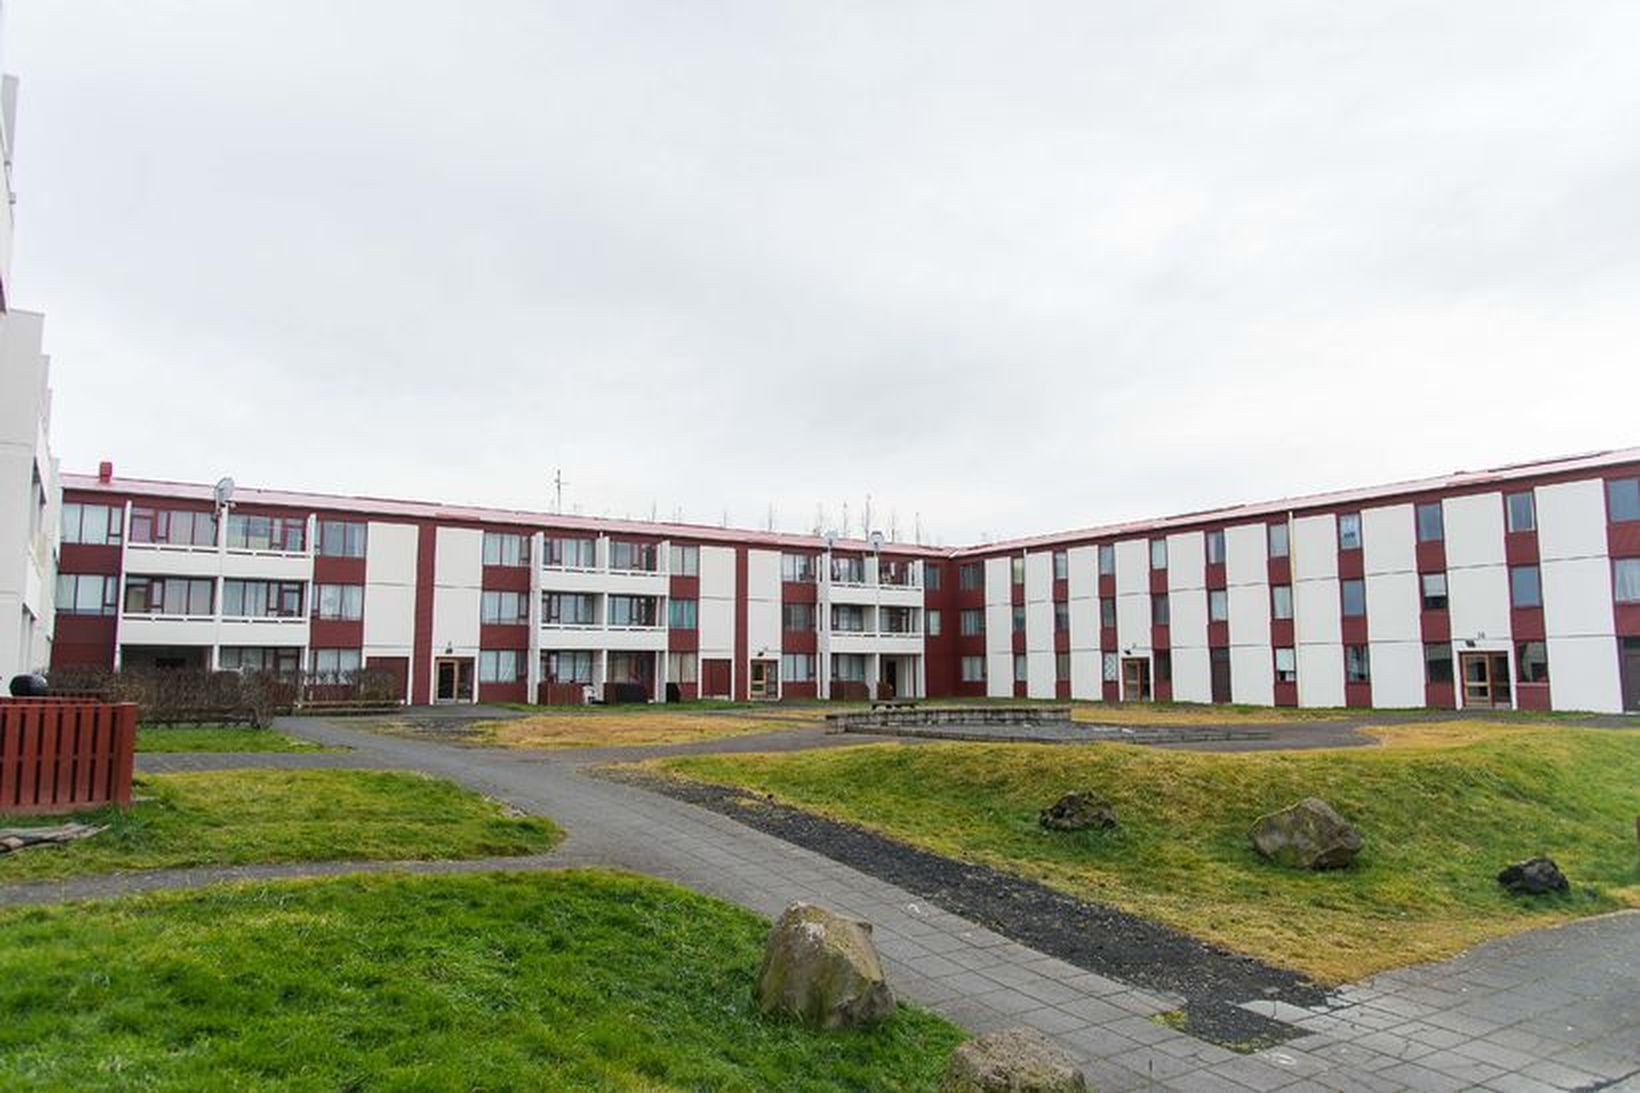 Heildarkostnaður Félagsbústaða vegna framkvæmda við Írarbakka 2-16 var 728 milljónir …